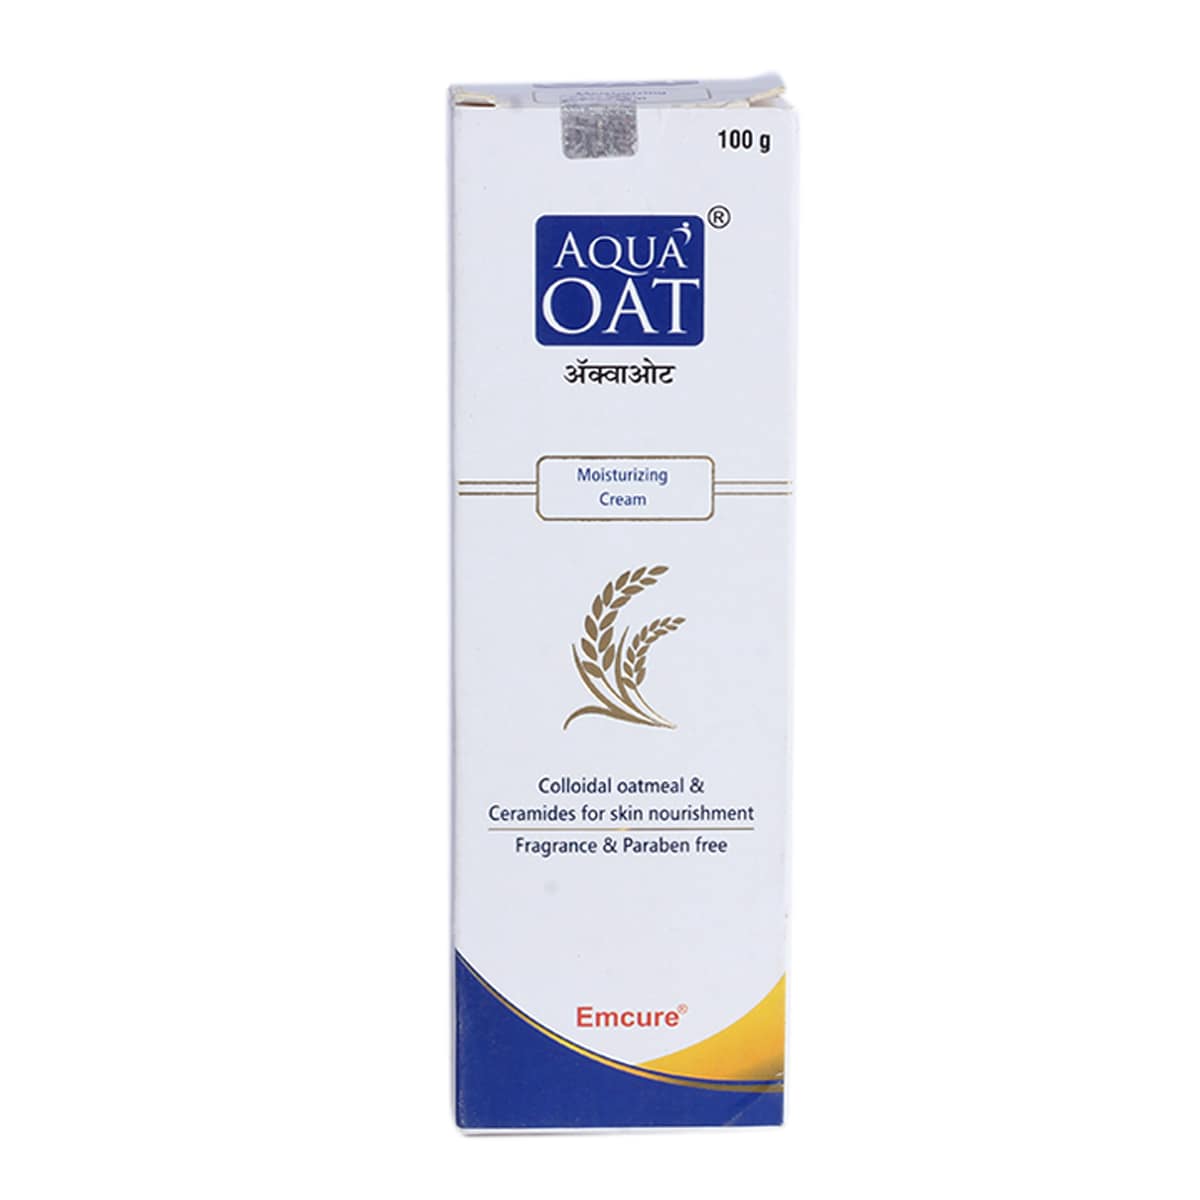 Buy Aqua Oat Moisturizing Cream 100 gm Online